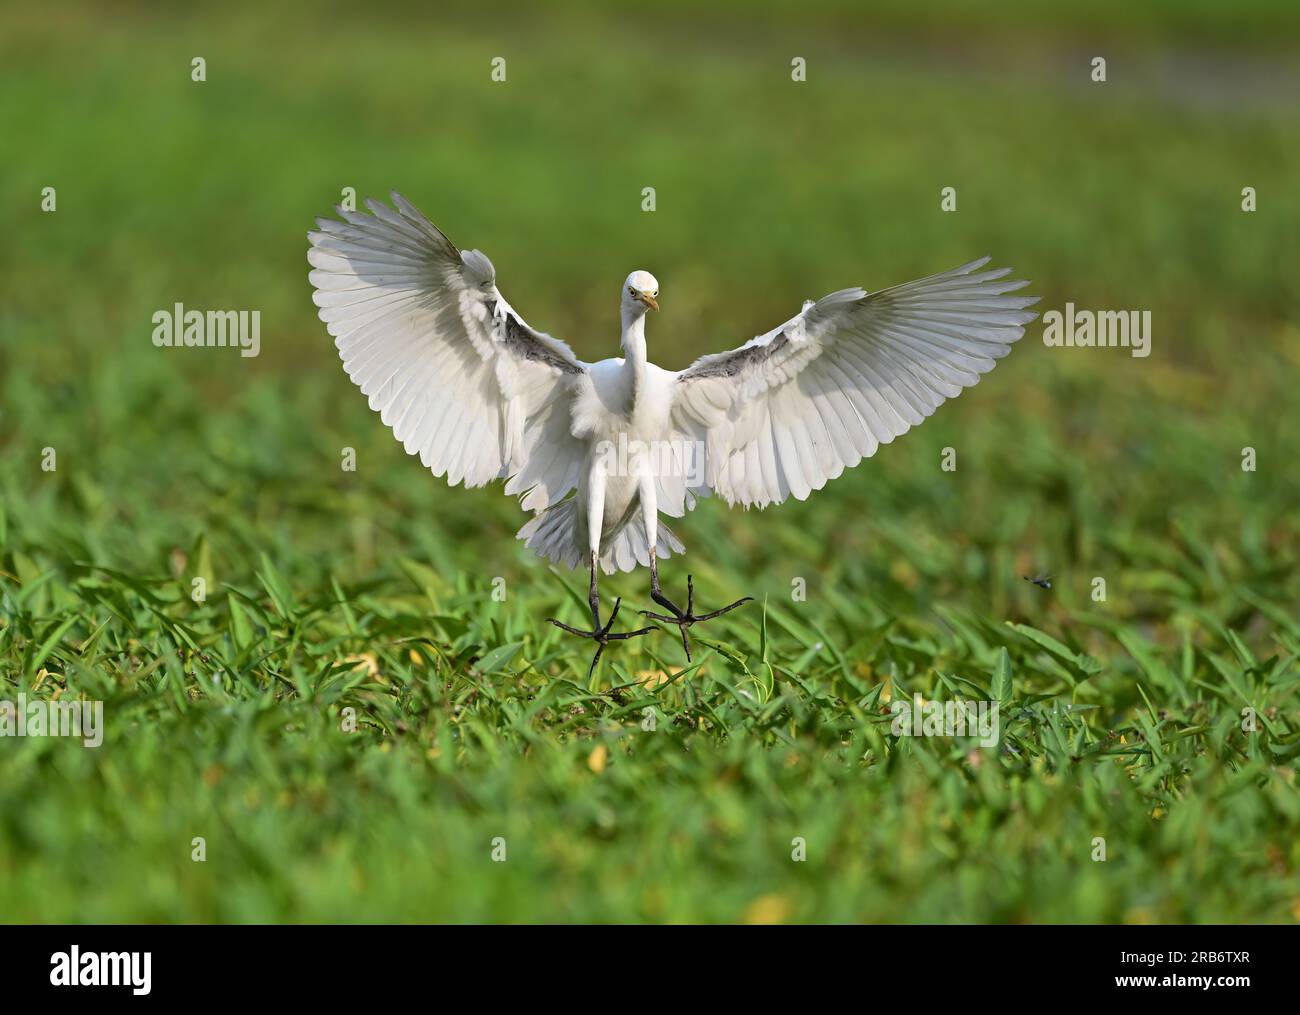 Impostare 2 immagini di uccelli della famiglia Heron. Volo, assestamento e alimentazione, immagini di interazione di aironi, garzette. Ogni immagine viene sottotitolata singolarmente Foto Stock